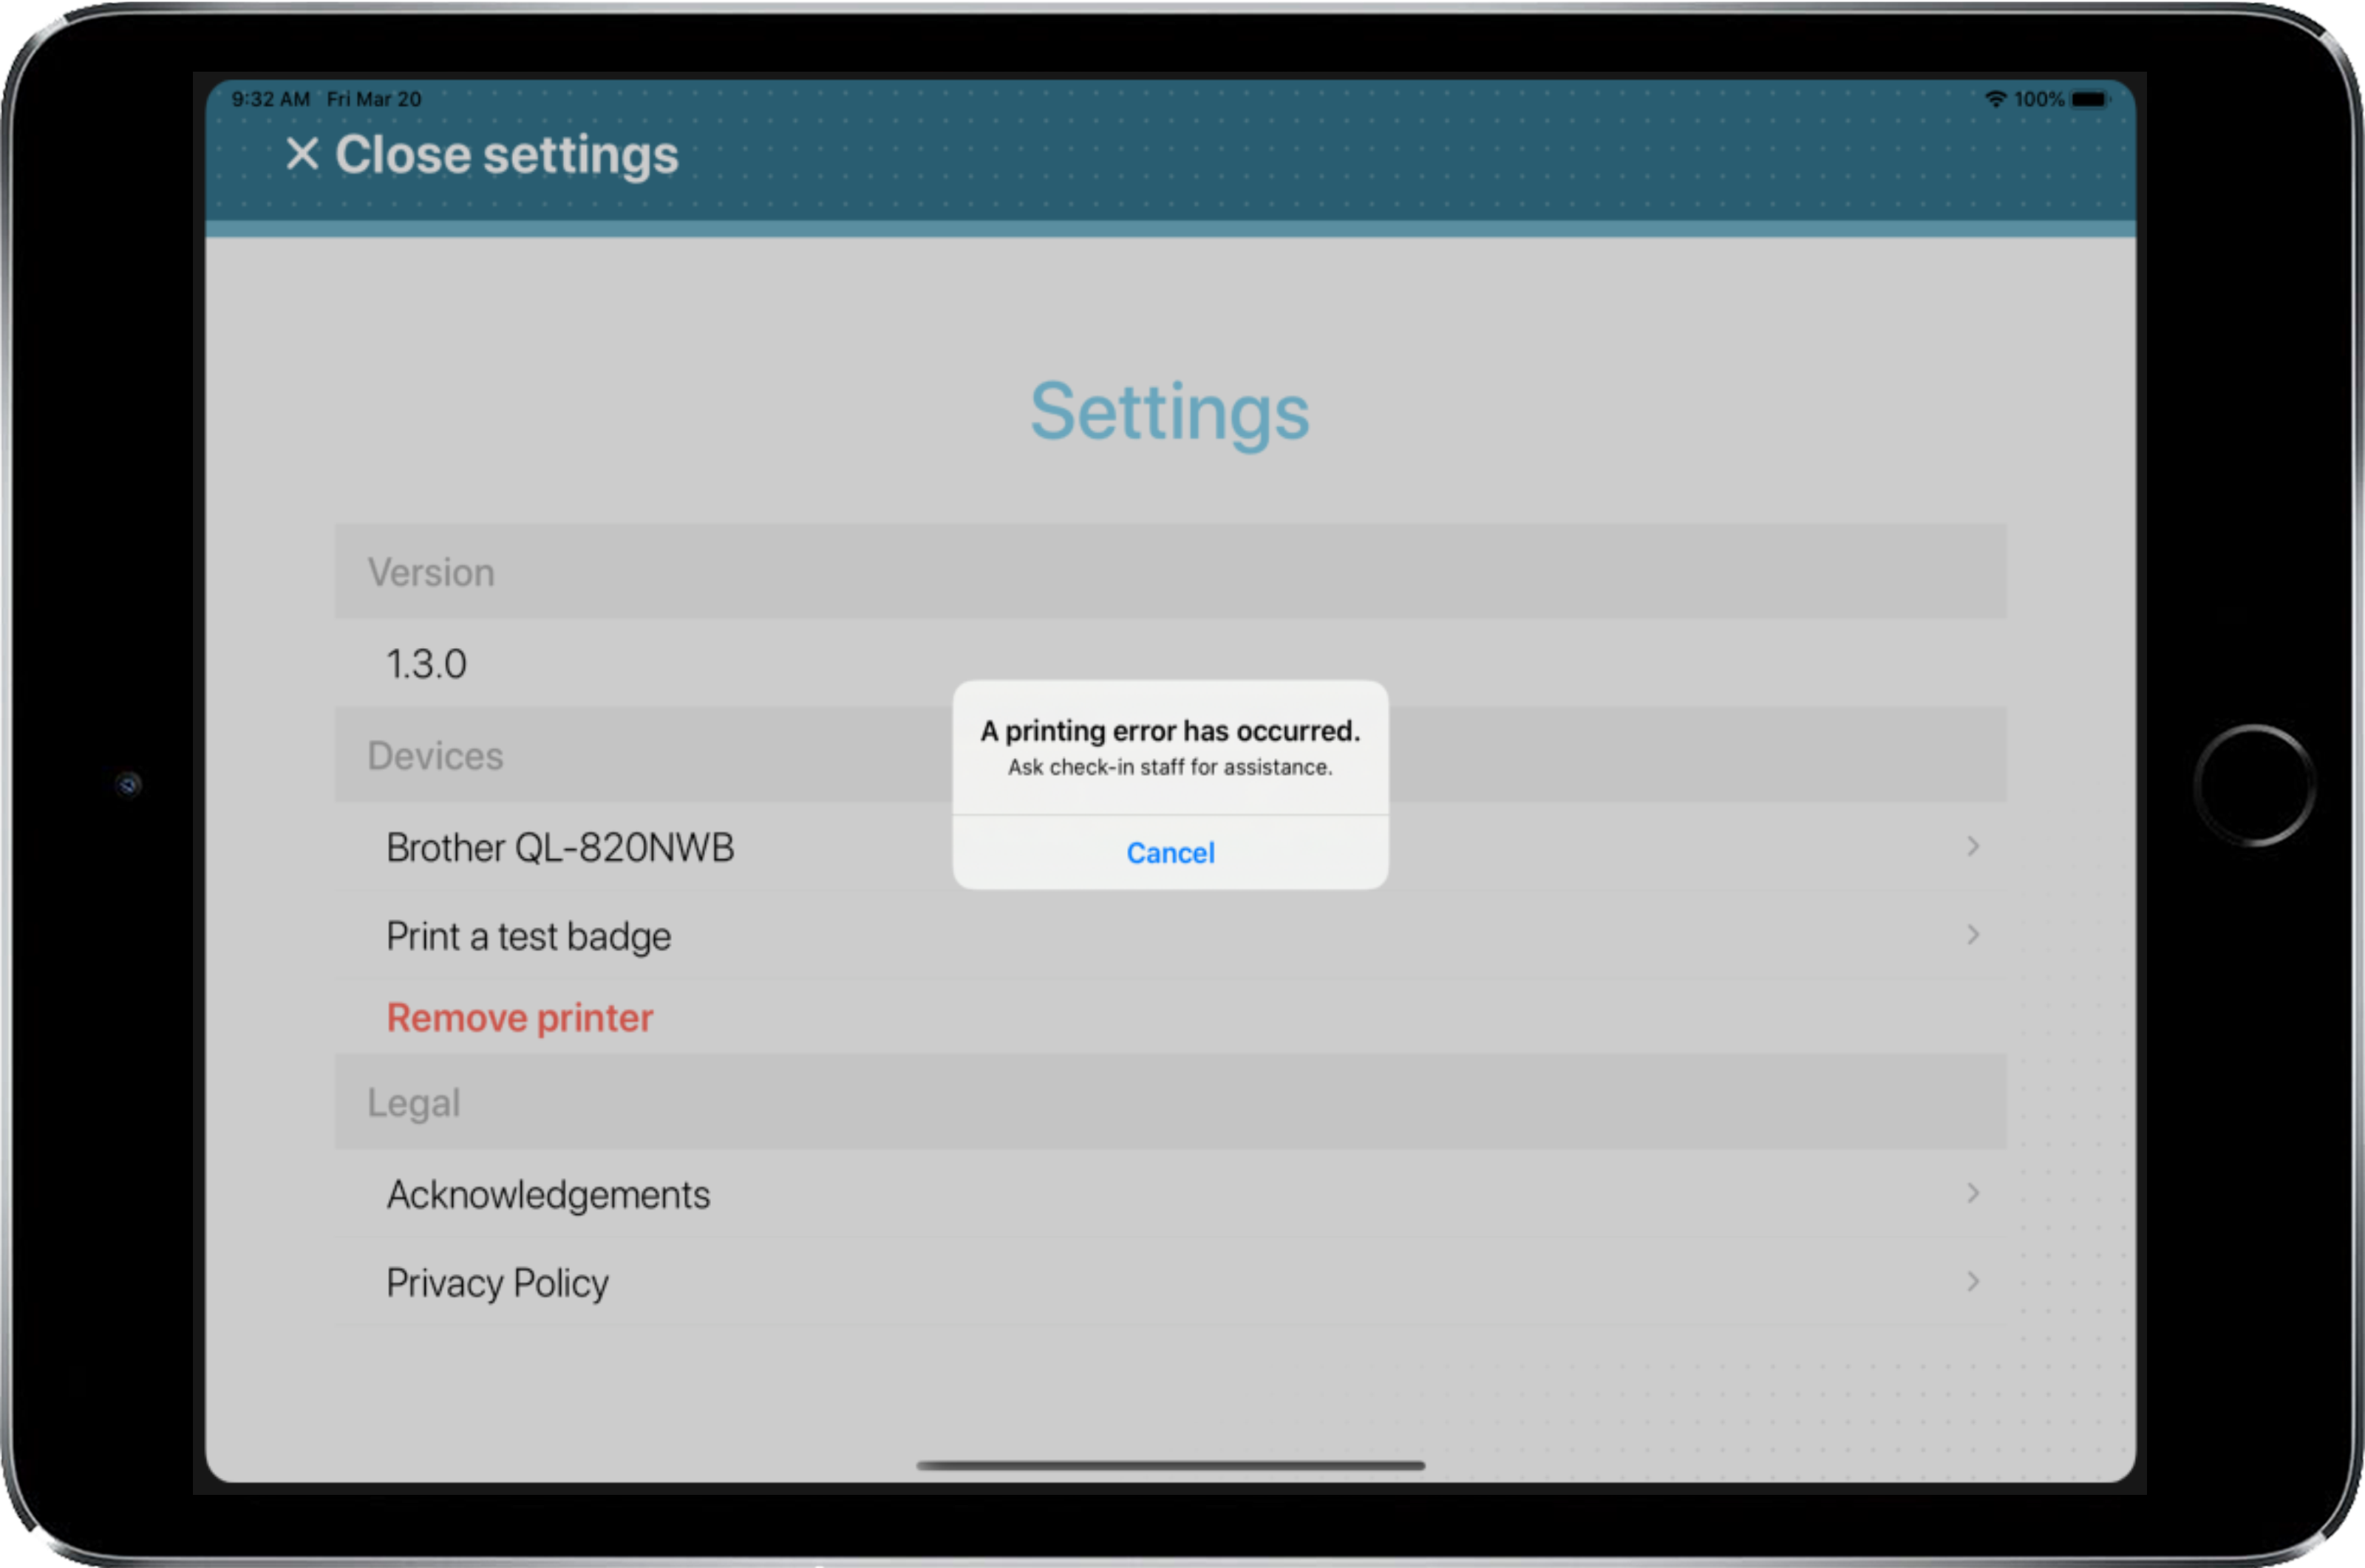 Apple iPad que muestra la página de configuración de la aplicación móvil ClearID Self-Service Kiosk con un mensaje de error de impresión.